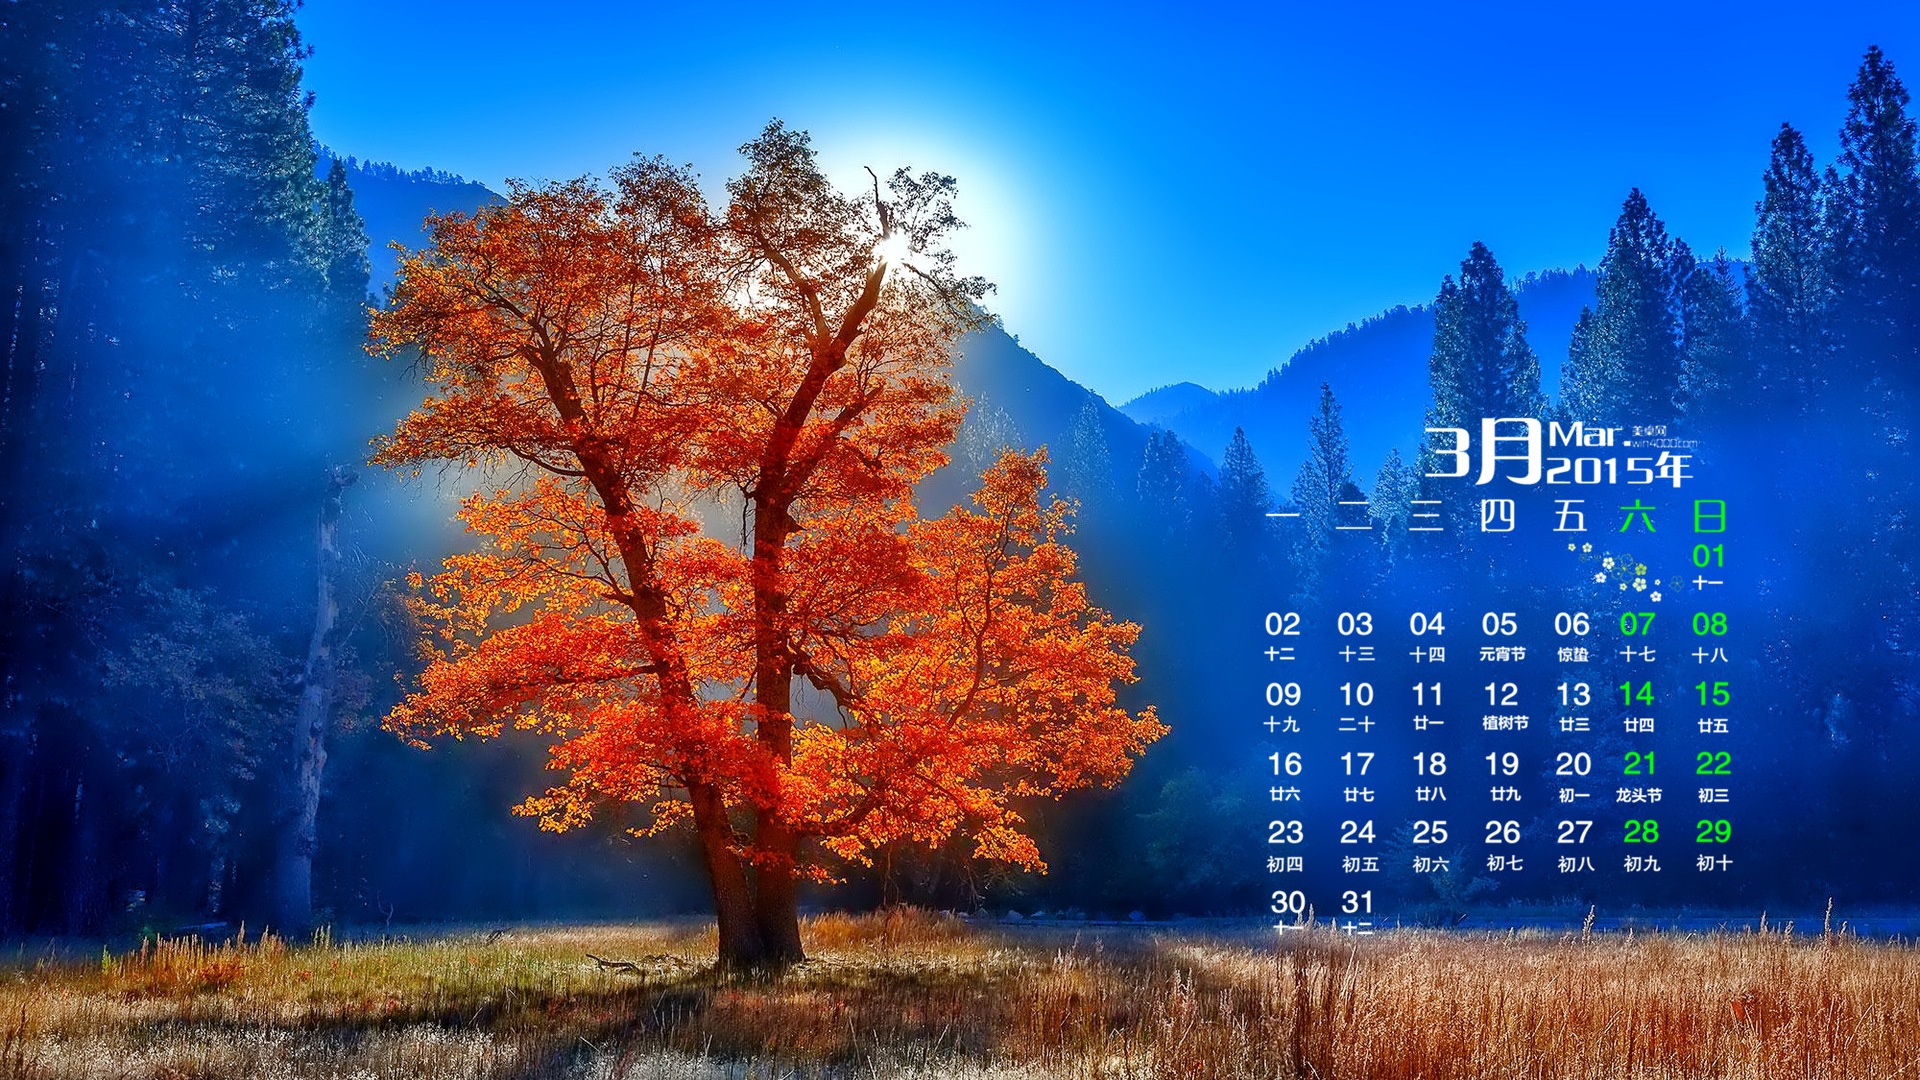 March 2015 Calendar wallpaper (1) #16 - 1920x1080